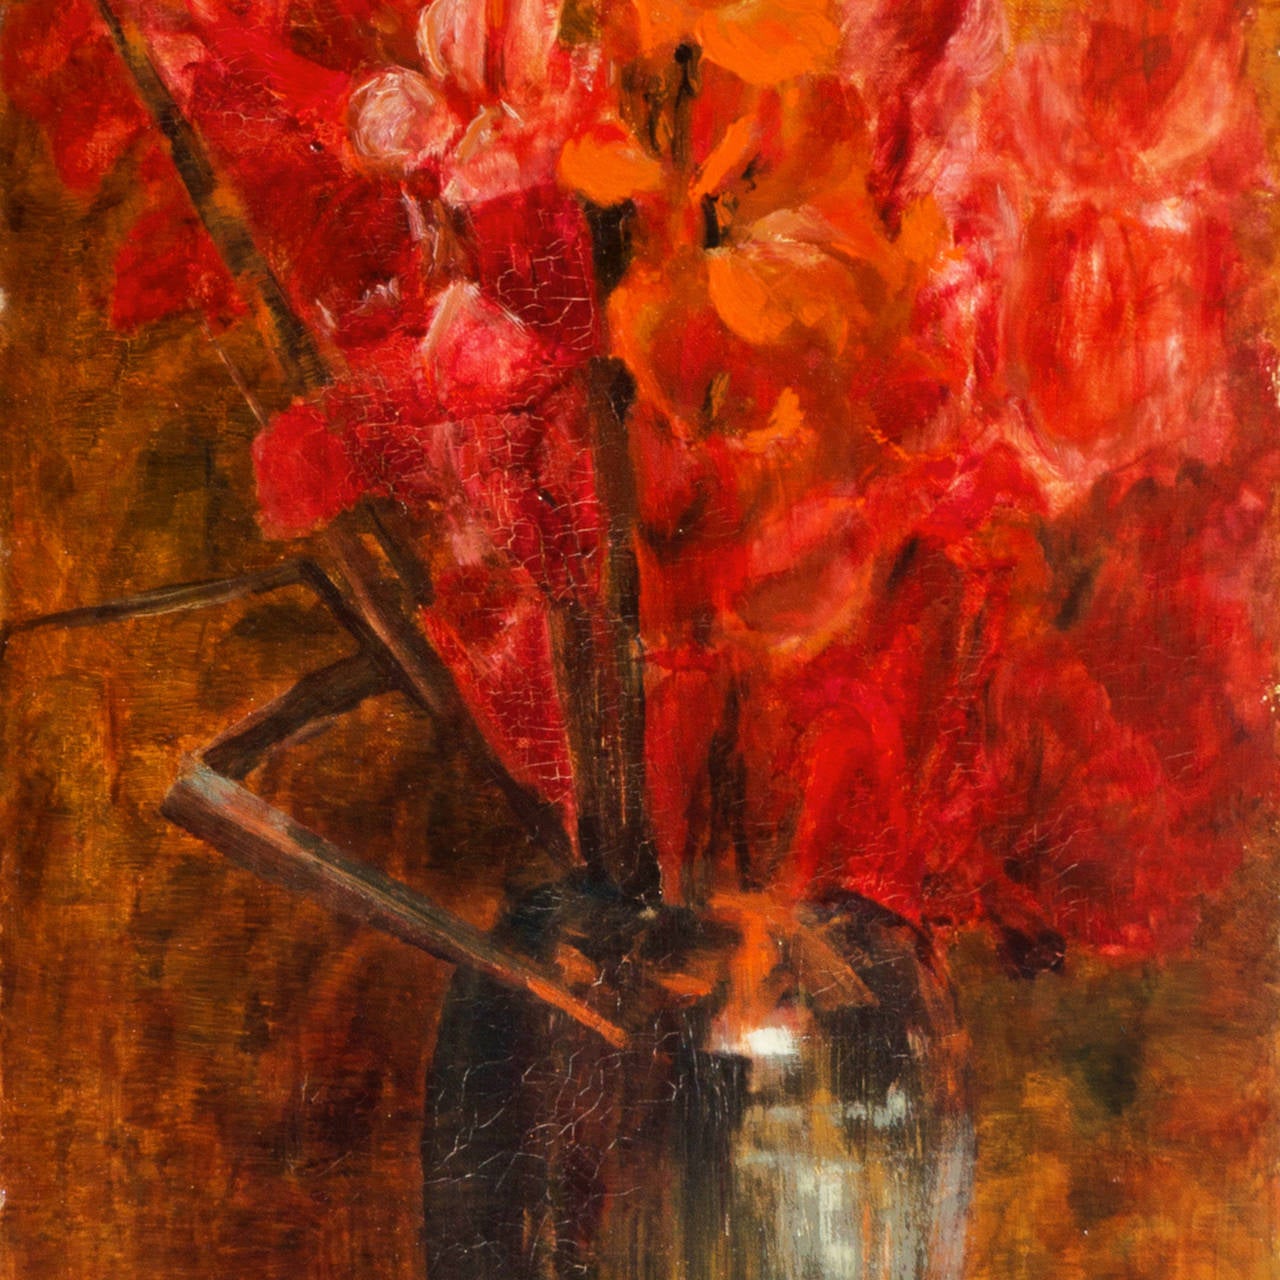 Red Gladioli in einer chinesischen Vase, Stillleben der Knstlerin der sthetizismus (Schwarz), Still-Life Painting, von Rose Marshall